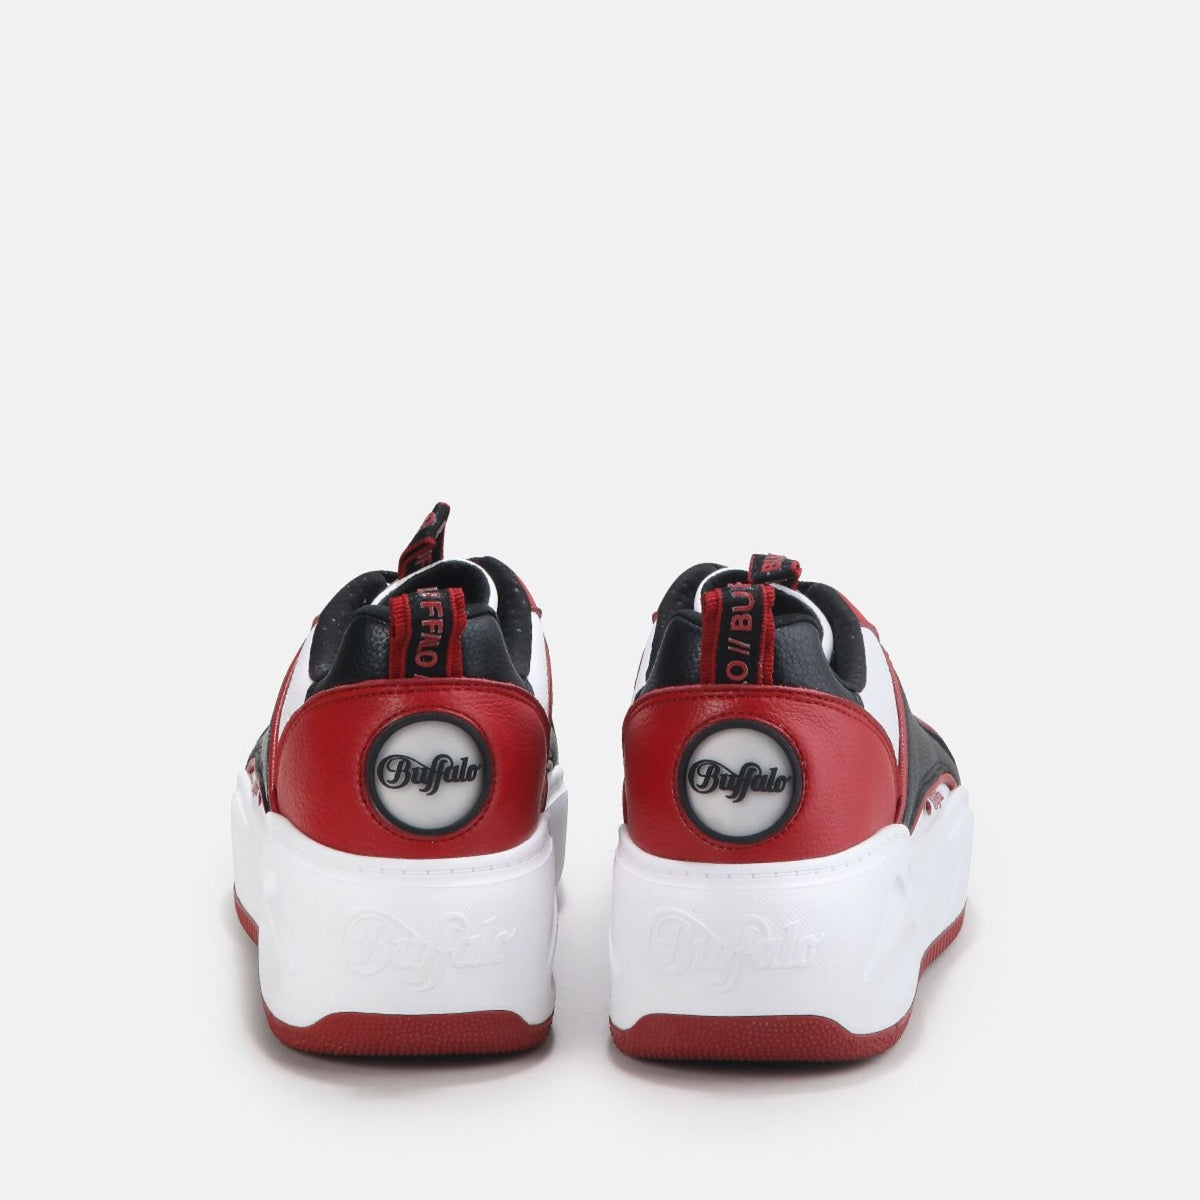 Scarpe BUFFALO Sneakers Vegan linea Flat SMPL 2.0 colore Nero e Rosso